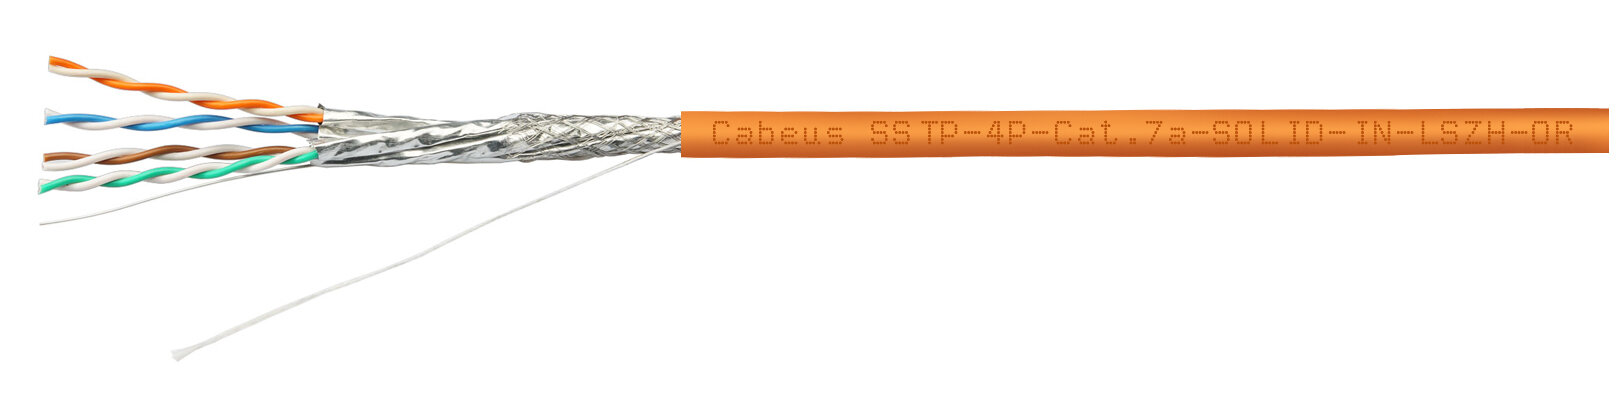 Cabeus SFTP-4P-Cat.6a-SOLID-IN-LSZH Кабель витая пара, категория 6a (10GBE) S/FTP, 4 пары 0,57мм (23 AWG), одножильный (solid), каждая пара в экране, общий экран - сетка, LSZH (305 м)